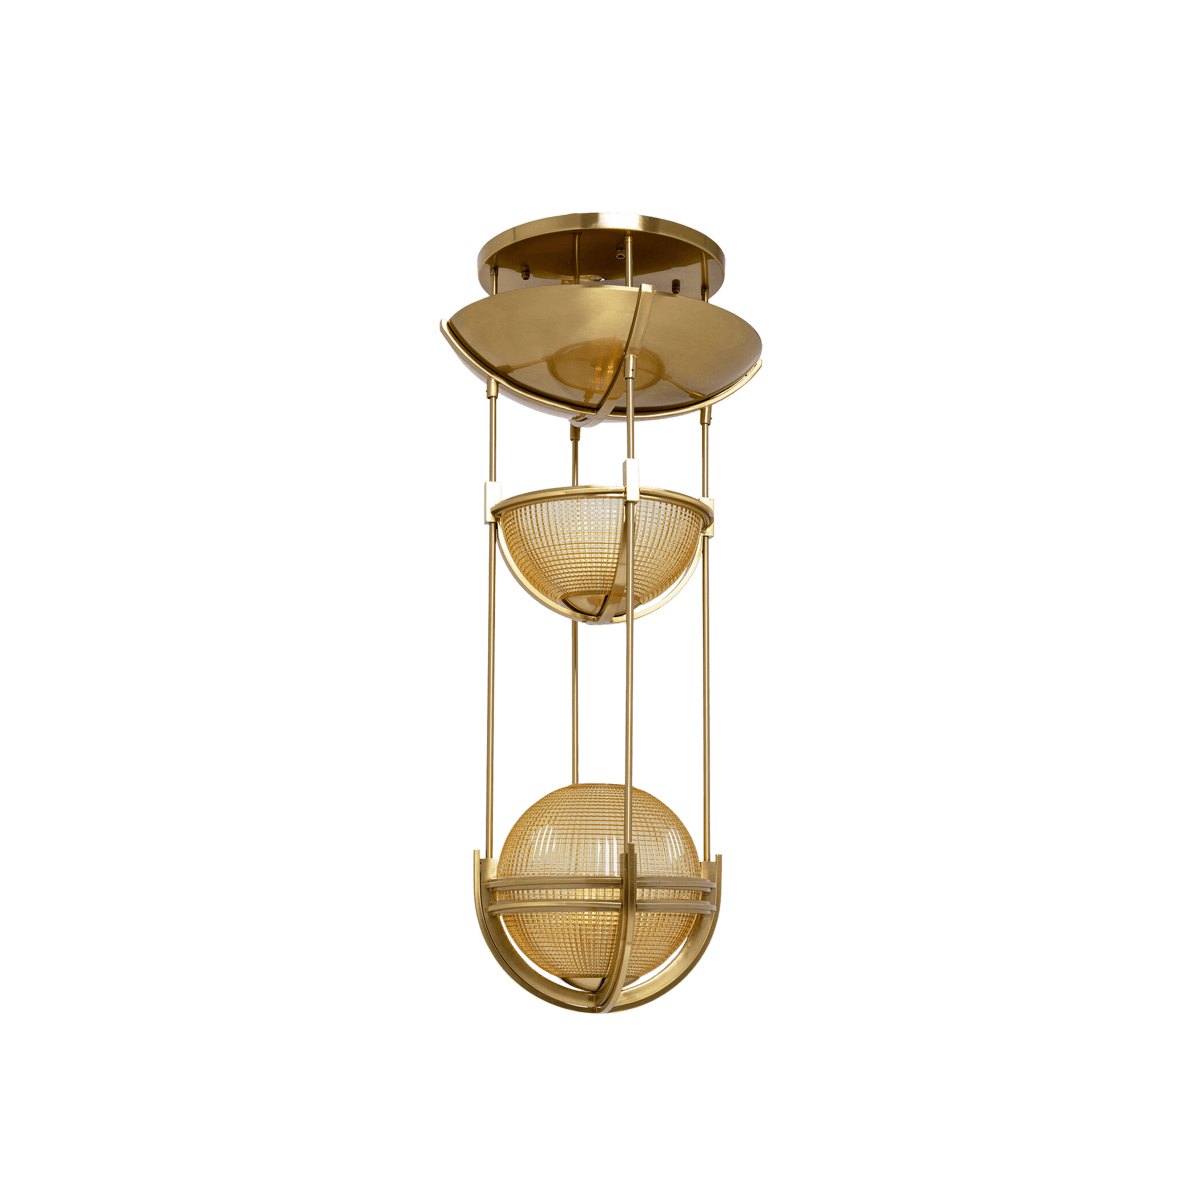 Pendant Lamp Global Basket Ã˜52Cm  (Excluding Bulb And Socket)